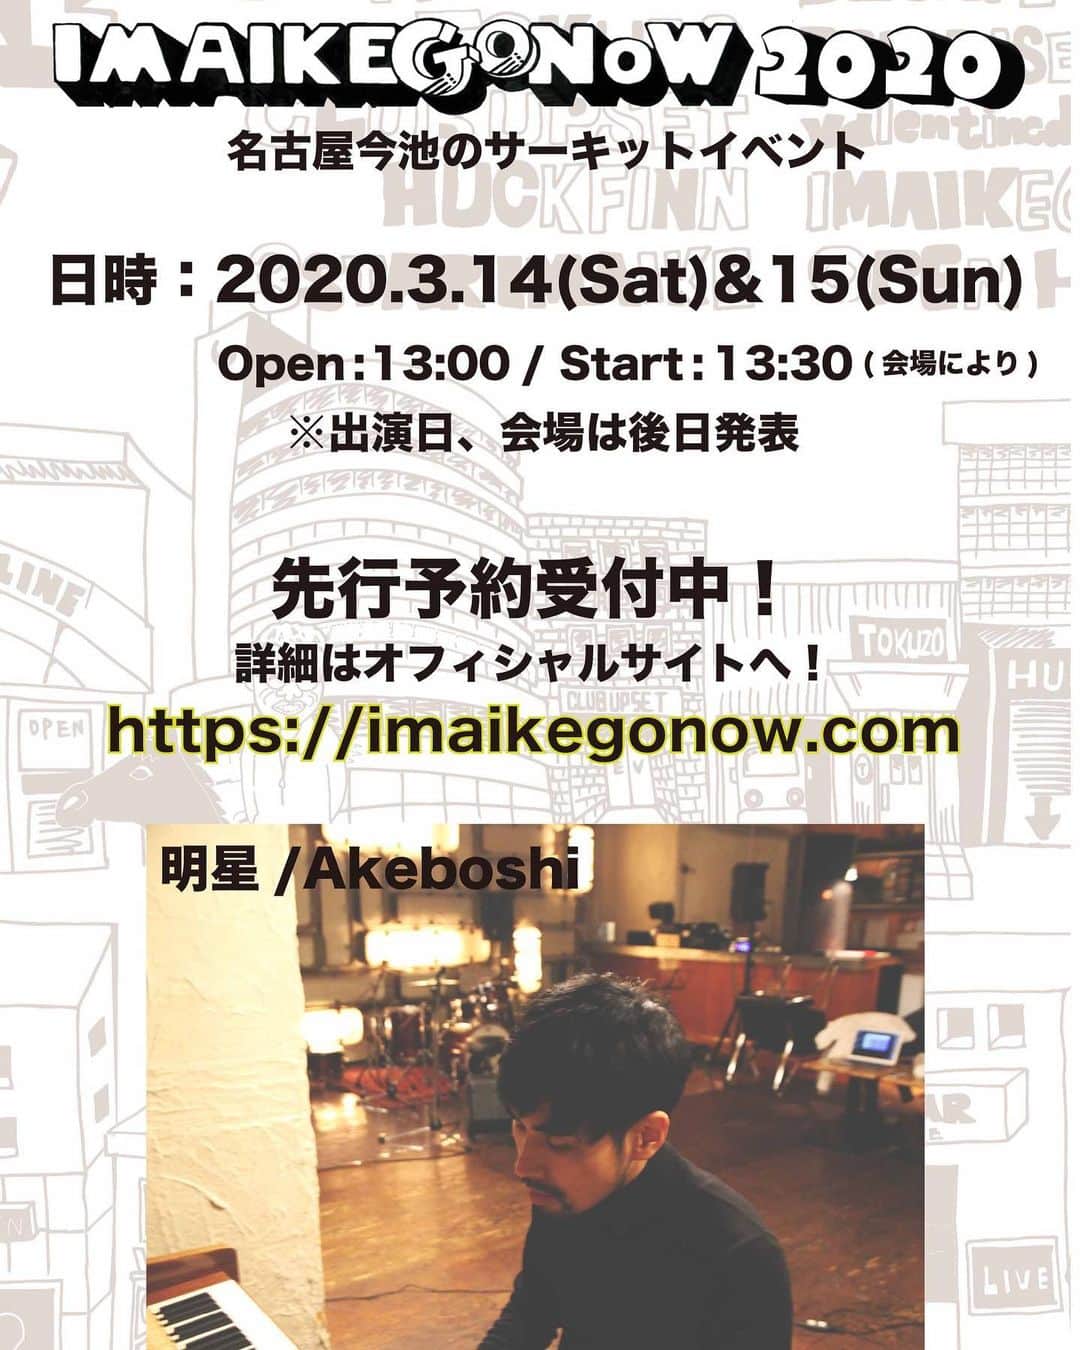 Akeboshiのインスタグラム：「名古屋今池のサーキットイベント 「IMAIKE GO NOW」に出演します。 ■日時：2020年3月14日(土) &15日(日) Open：13:00 / Start：13:30(会場による) ※出演日、会場は後日発表。 ■出演：ACO / 明星/Akeboshi / bud&harbor / ジオラマラジオ / ドミコ / fox capture plan / FRONTIER BACKYARD / フルカワユタカ / 羊文学 / jizue LAZYgunsBRISKY / LEO IMAI / LOW IQ 01 & THE RHYTHM MAKERS / マッシュとアネモネ / メメタァ / MINAKAKKE / mouse on the keys / myeahns / NABOWA / 中村一義 思い出野郎Aチーム / 折坂悠太 / PARISonthecity! / PEARLCENTER / thepeggies/ Polaris 呂布カルマ / 蔡忠浩 / 錯乱前戦 / SCOOBIE DO / SEVENTEEN AGAiN / 柴田聡子 / 6eyes / TGMX / tio / ti-ti.uu / トミタ栞 / ツチヤチカら / バレーボウイズ　and more ■チケット： 前売料金　1日券¥4900(税込) / 2日通し券¥8800(税込) 当日料金　1日券¥6000(税込) / 2日通し券¥10000(税込) ※ドリンク代各日別途¥600 必要 ■先行予約：オフィシャルサイトにて12月26(木) 18:00～1/5(日) 23:59まで受付 ■一般発売：1 月 25 日(土) チケットぴあ/ローソンチケット/e+ / LINE TICKET にて ■オフィシャルサイト：https://imaikegonow.com ■問い合わせ：JAILHOUSE 052-936-6041 / www.jailhouse.jp」